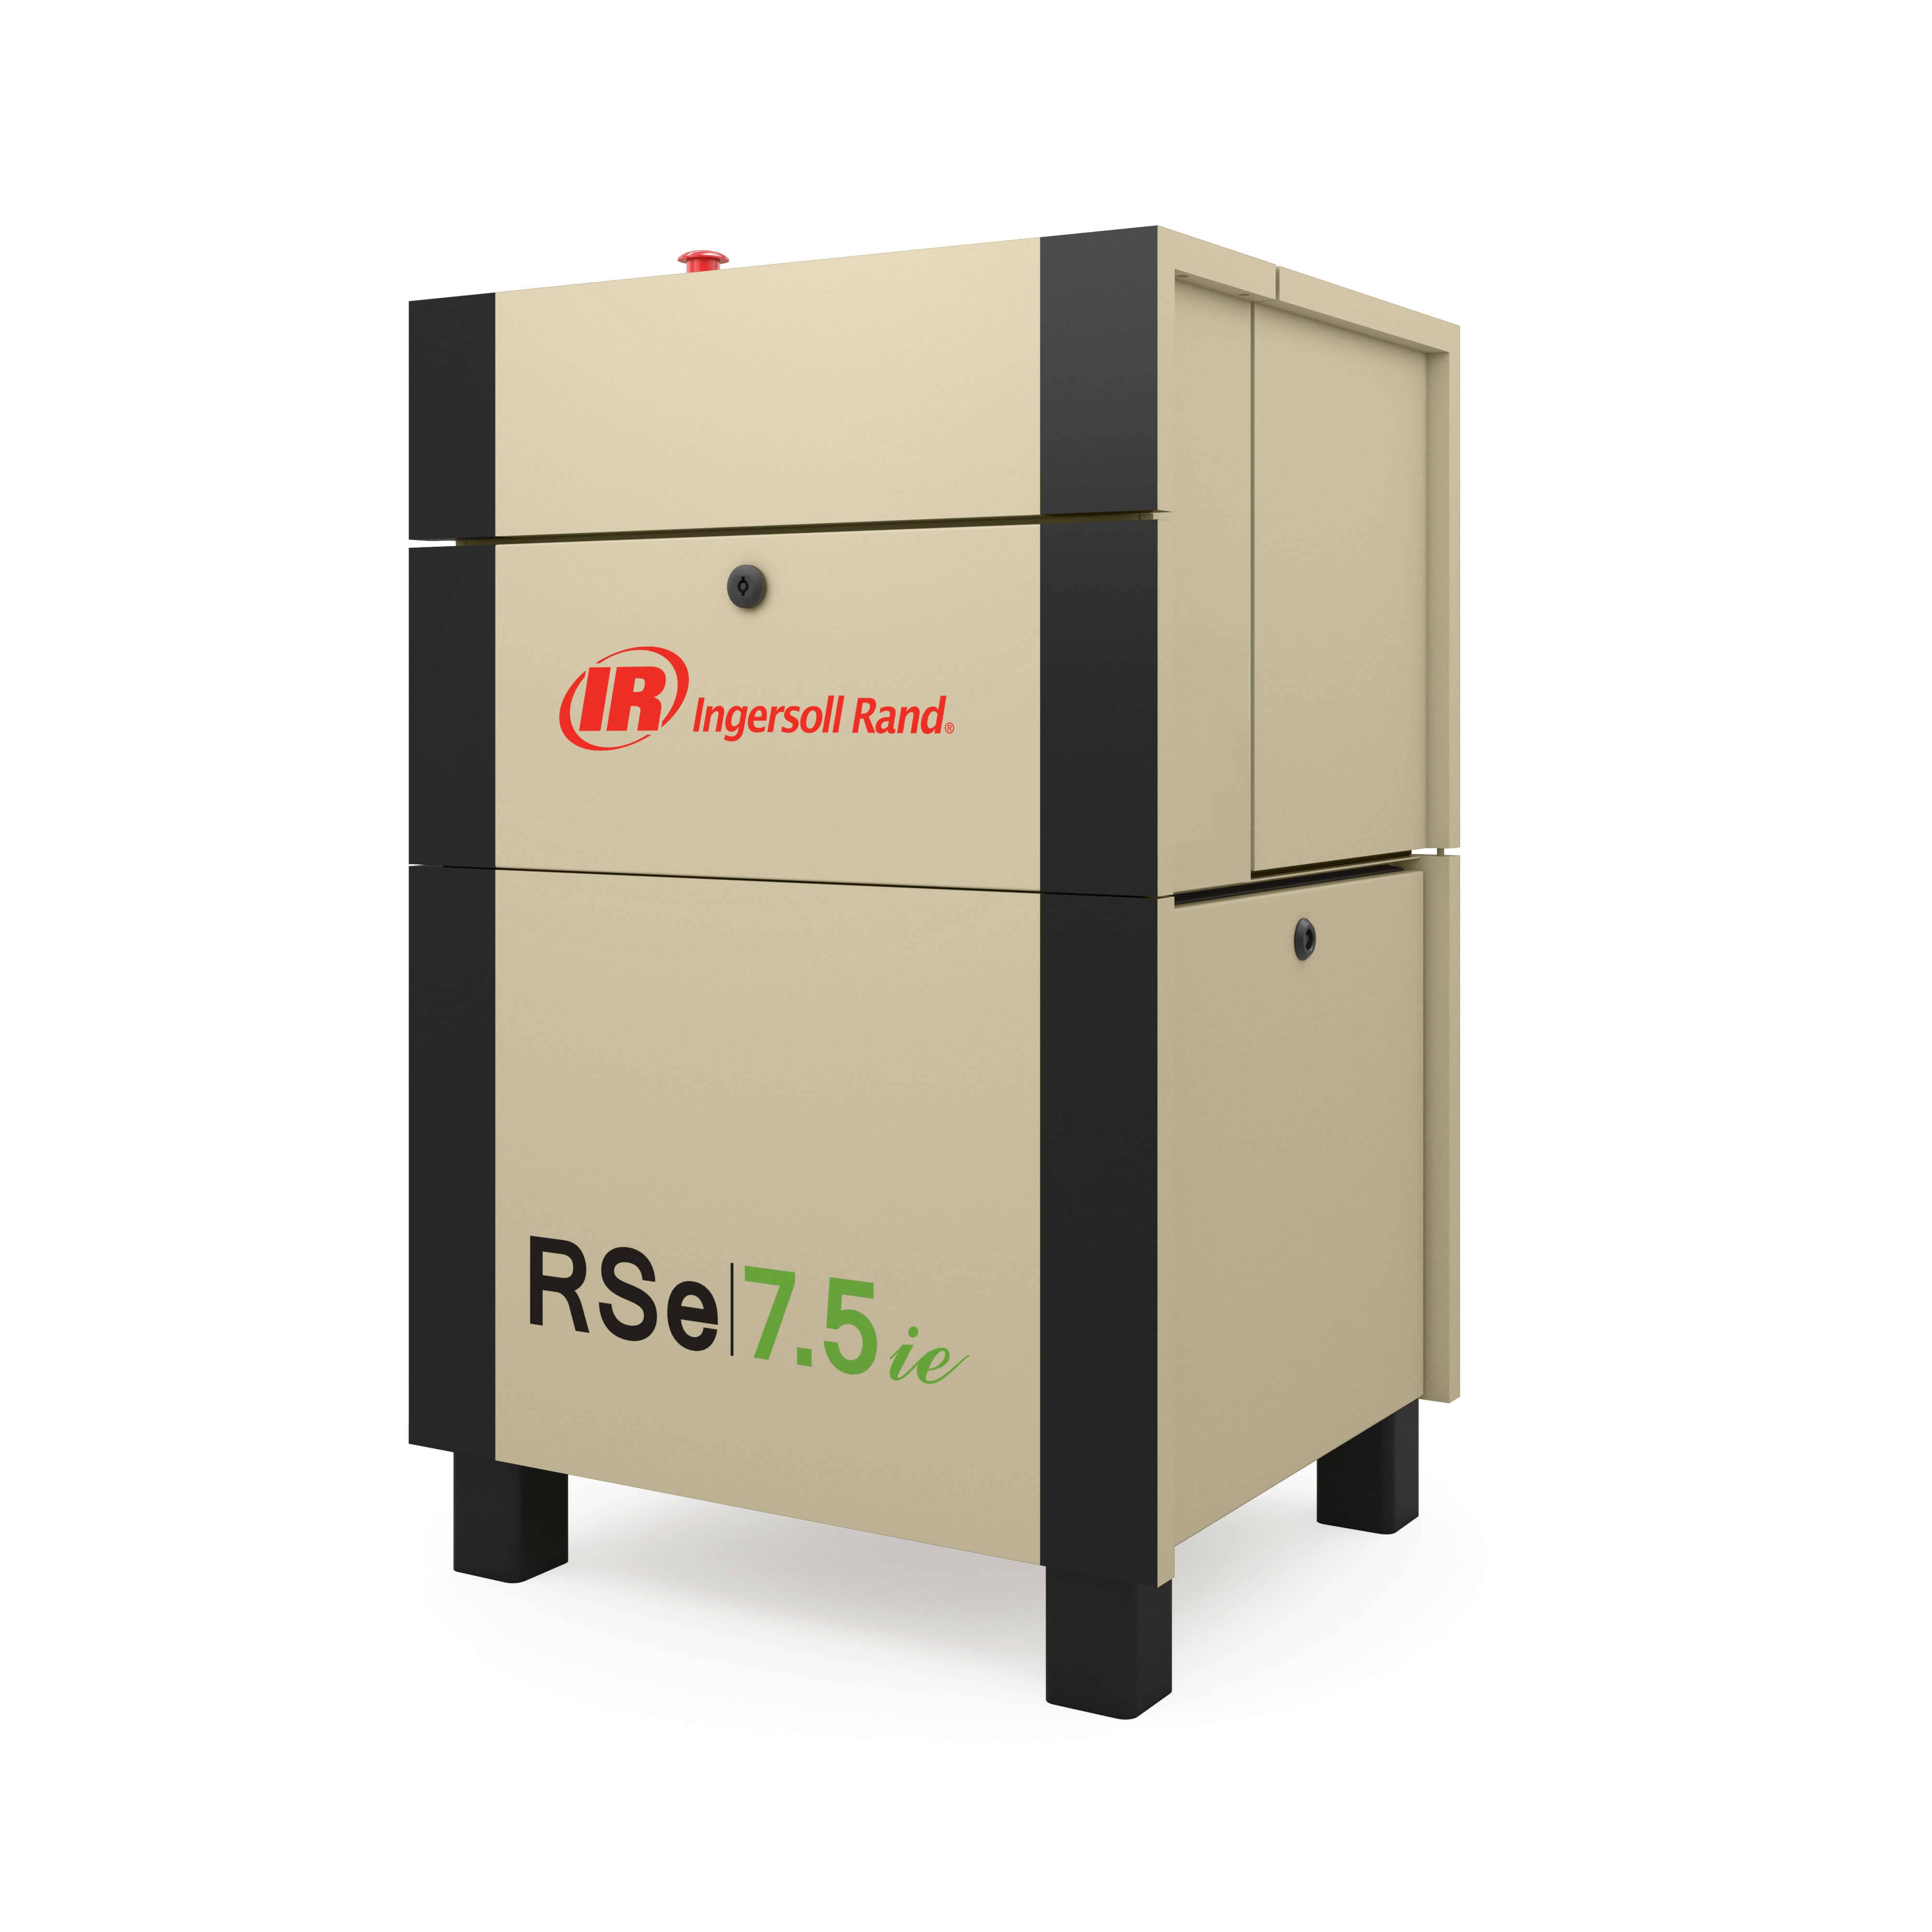 Ingersoll Rand Compresores de tornillo rotativo lubricados Next Generation R-Series de 7,5-11 kW de eficiencia superior